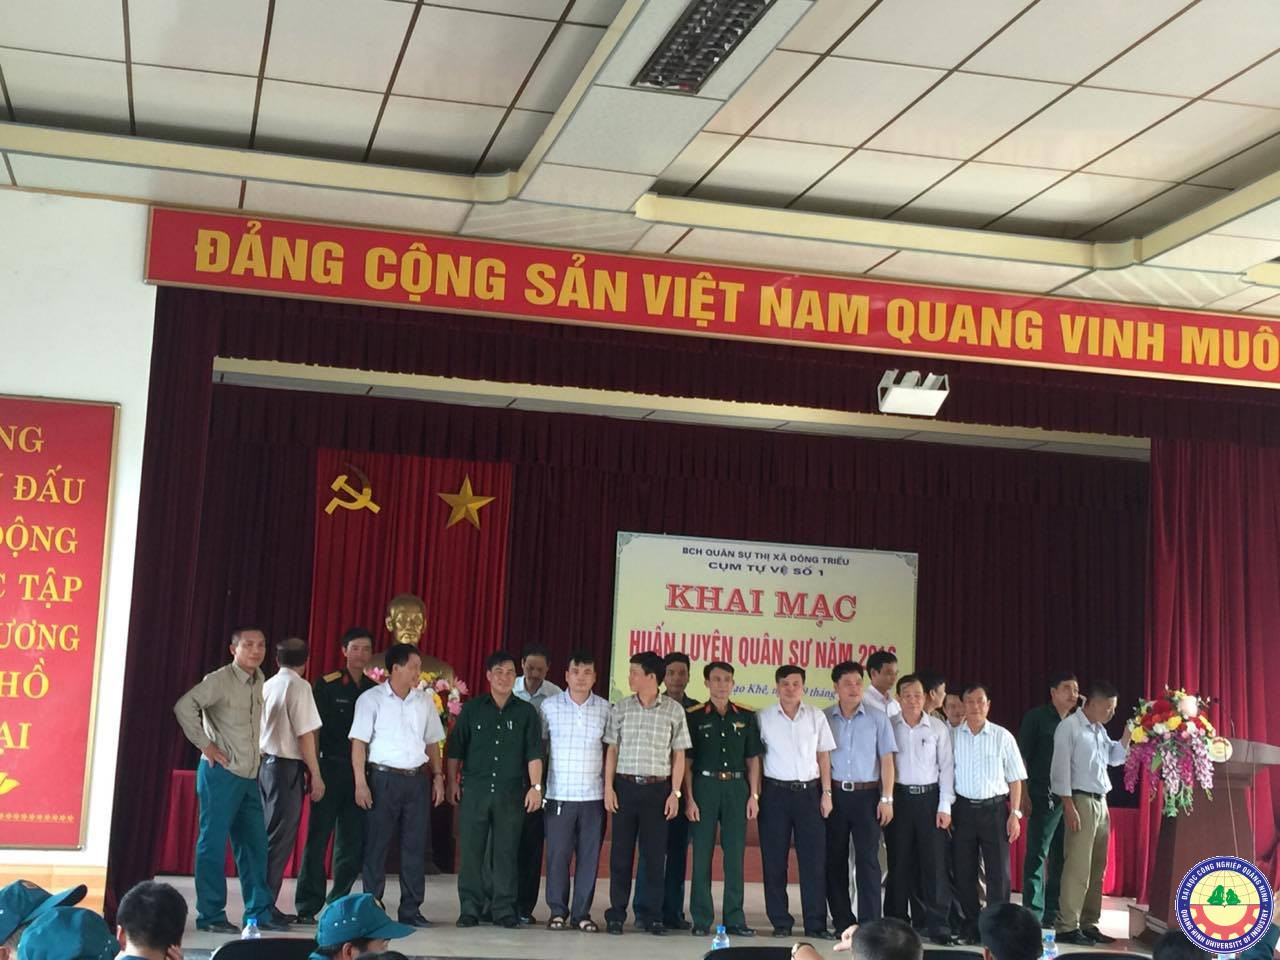 Trường Đại học Công nghiệp Quảng Ninh tham gia huấn luyện quân sự năm 2016